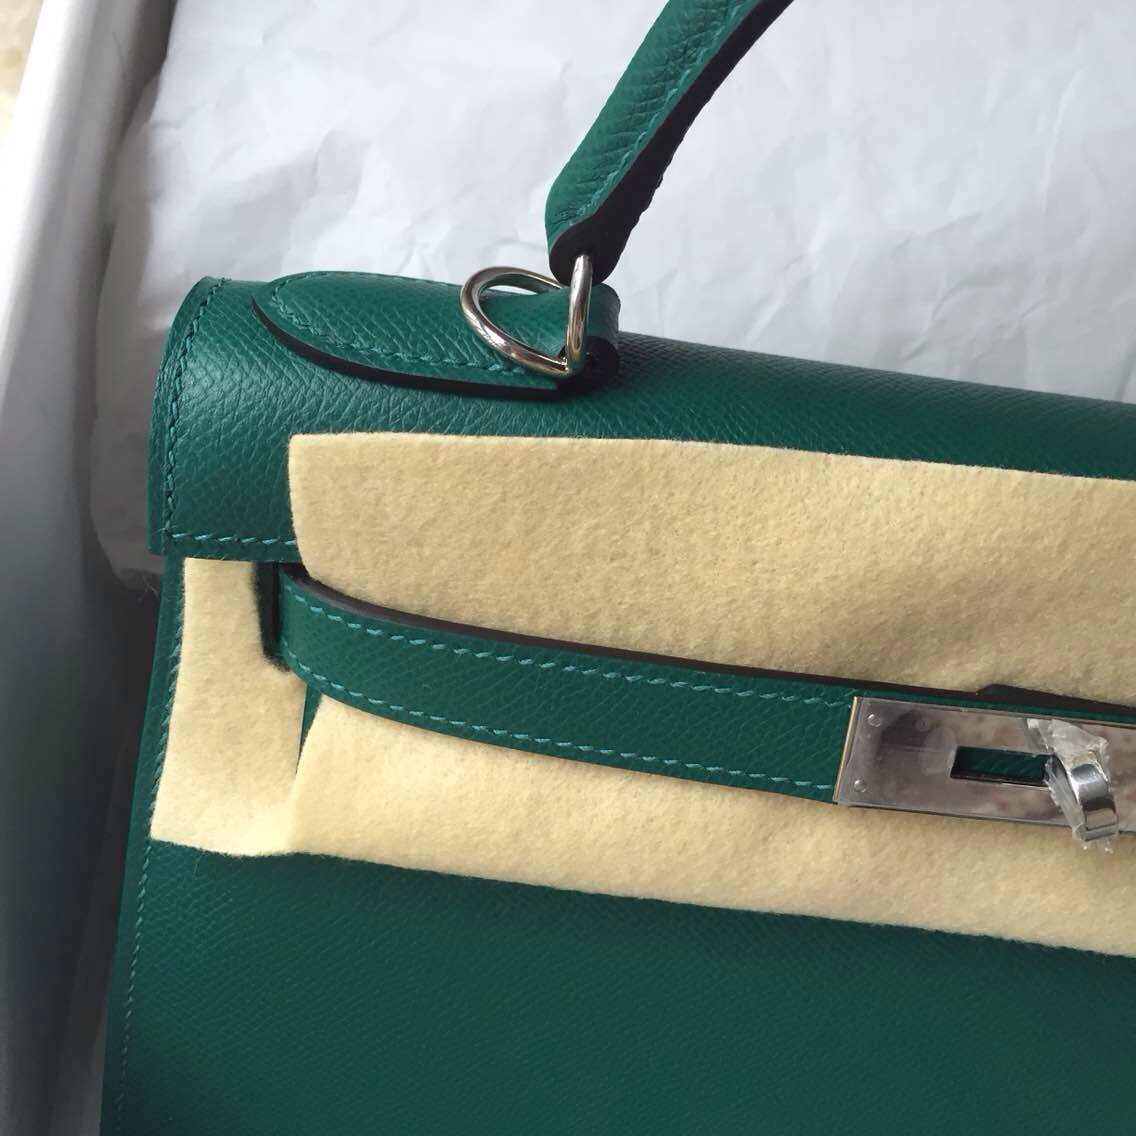 Hermes Z6 Malachite Color Epsom Calfskin Leather Kelly Bag Sellier 28cm